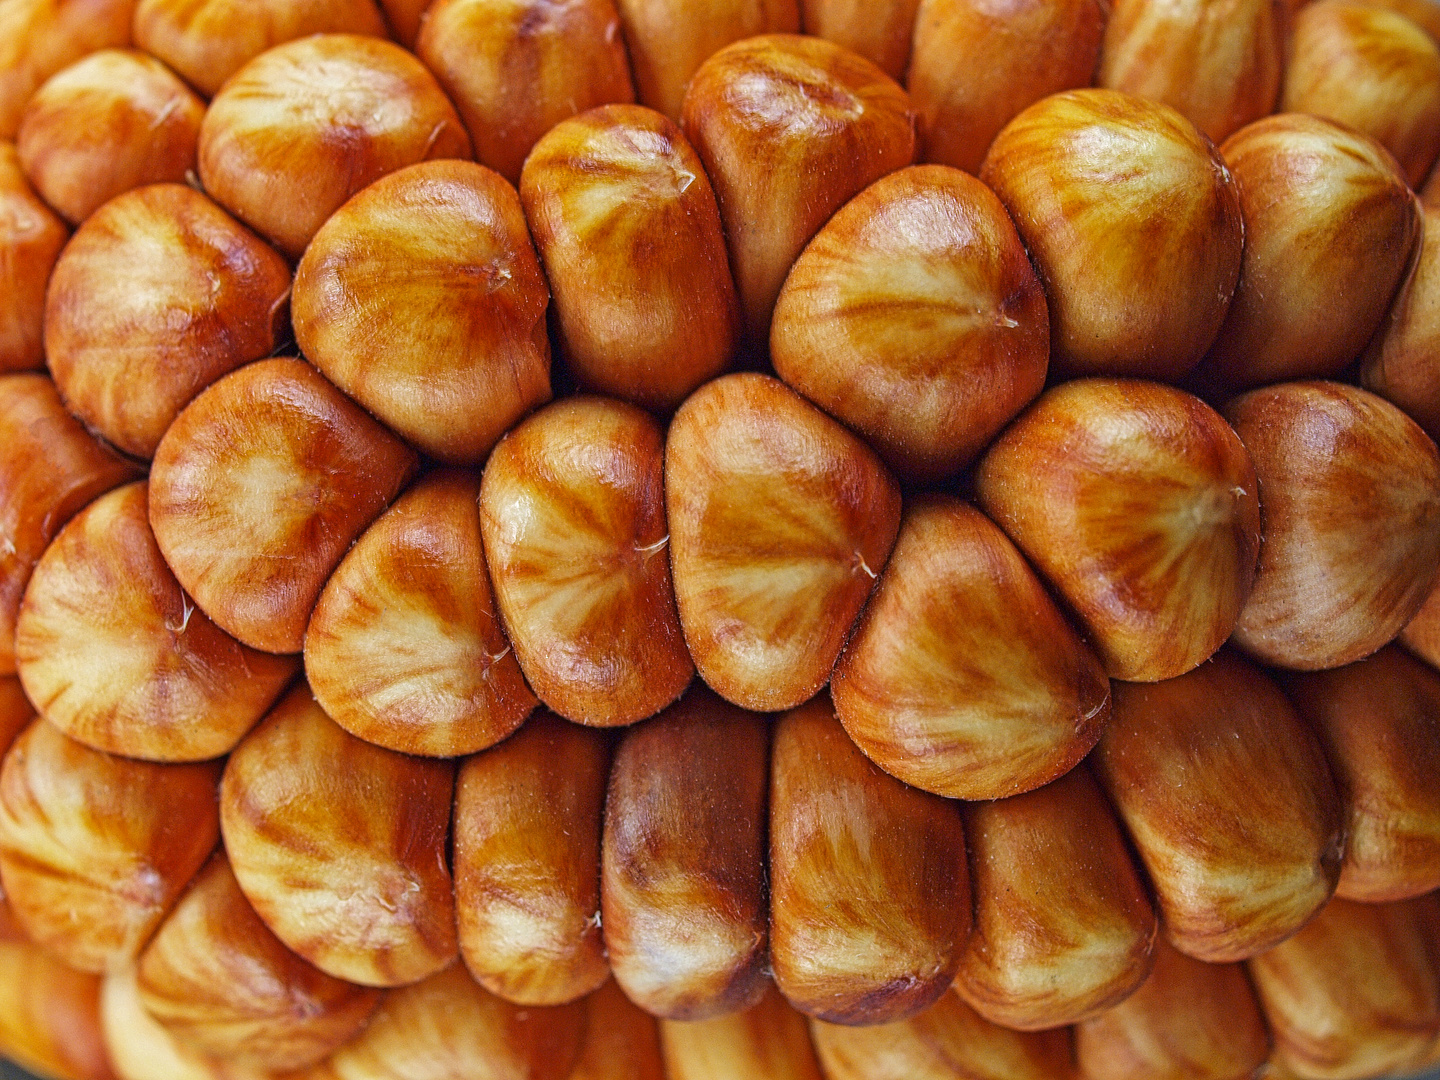 Diese Maiskörner sehen fast wie Nüsse aus